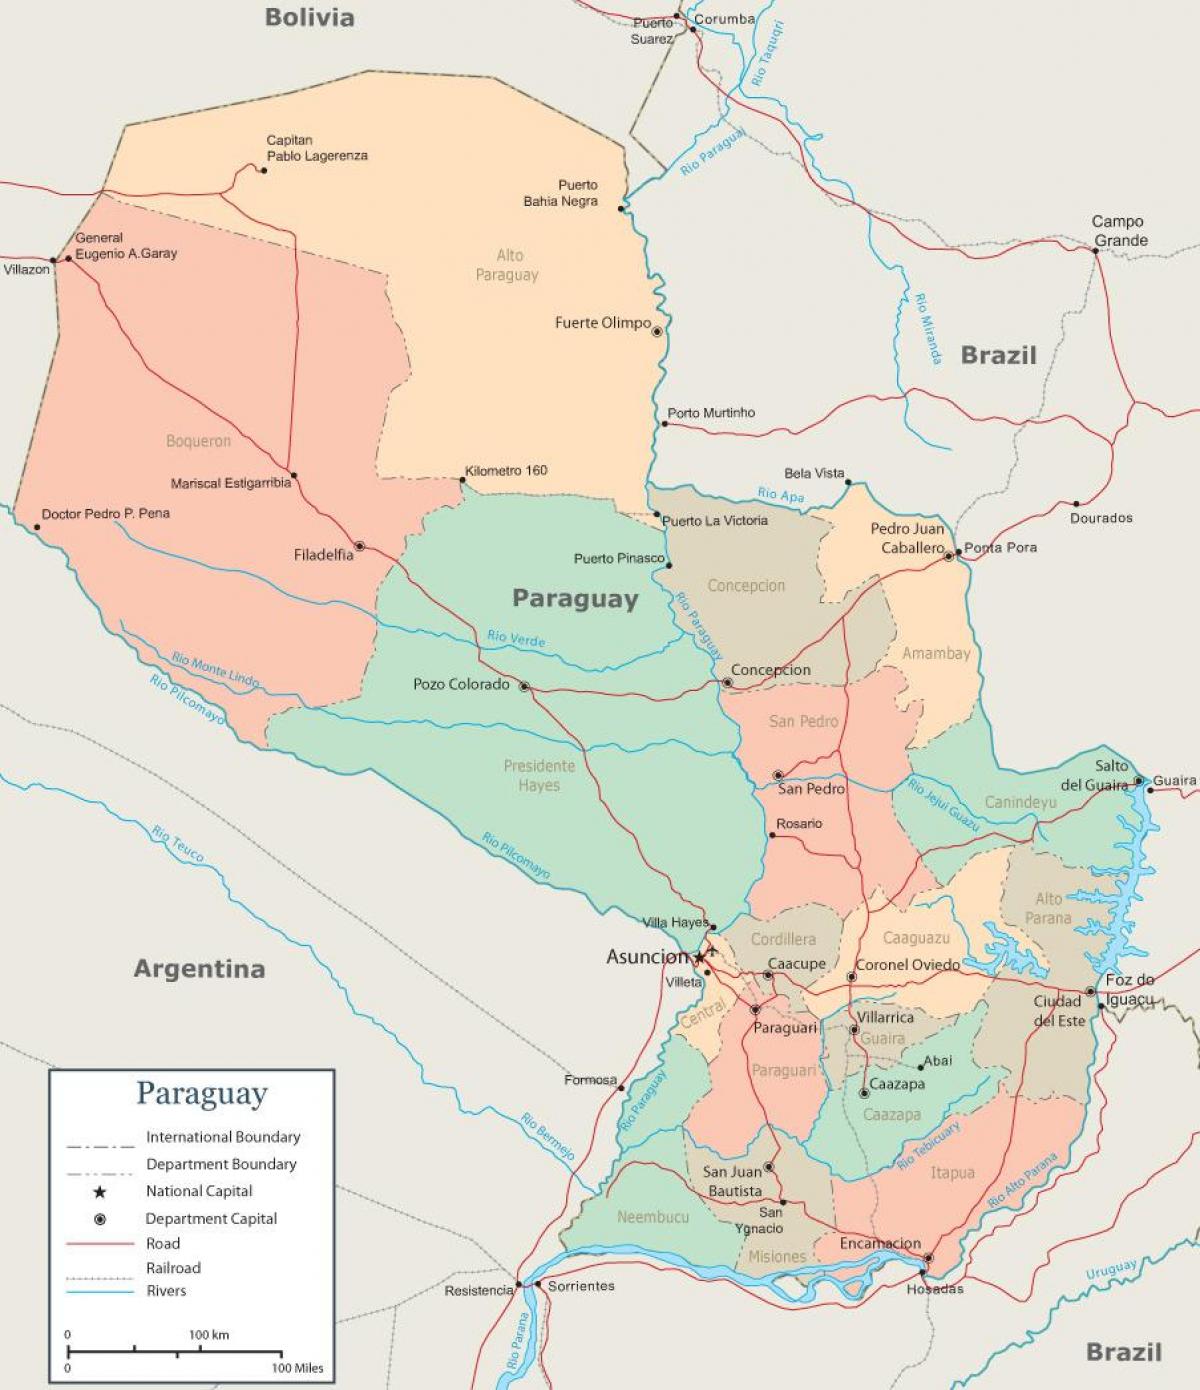 パラグアイアスンシオンの地図